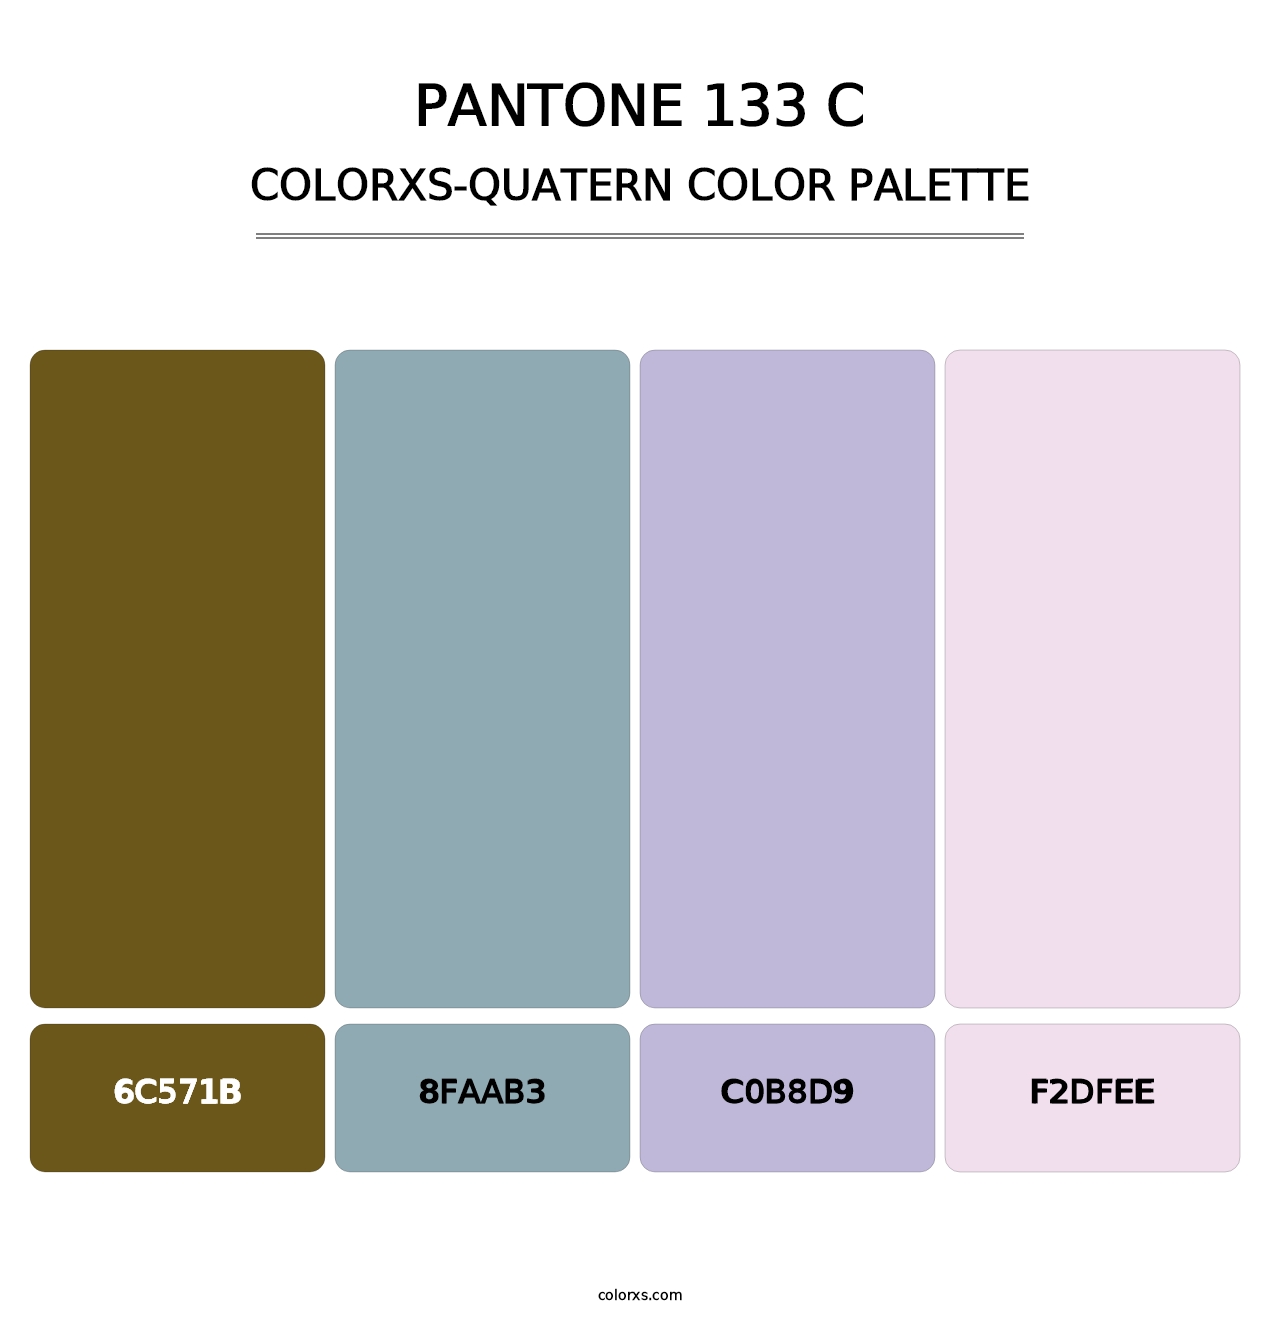 PANTONE 133 C - Colorxs Quatern Palette